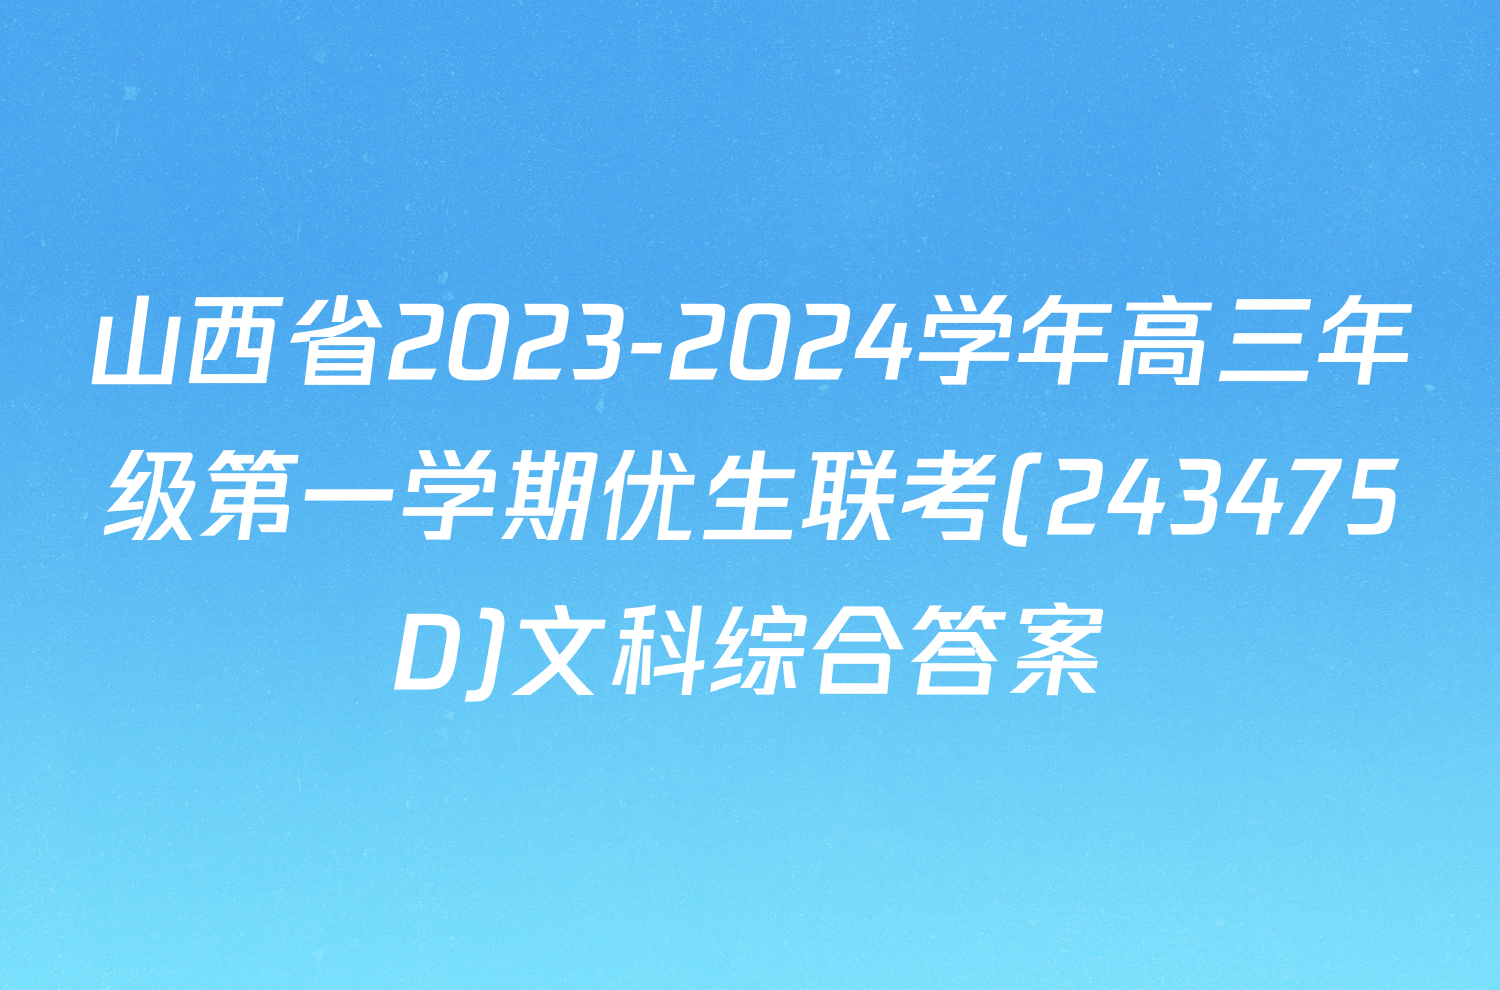 山西省2023-2024学年高三年级第一学期优生联考(243475D)文科综合答案